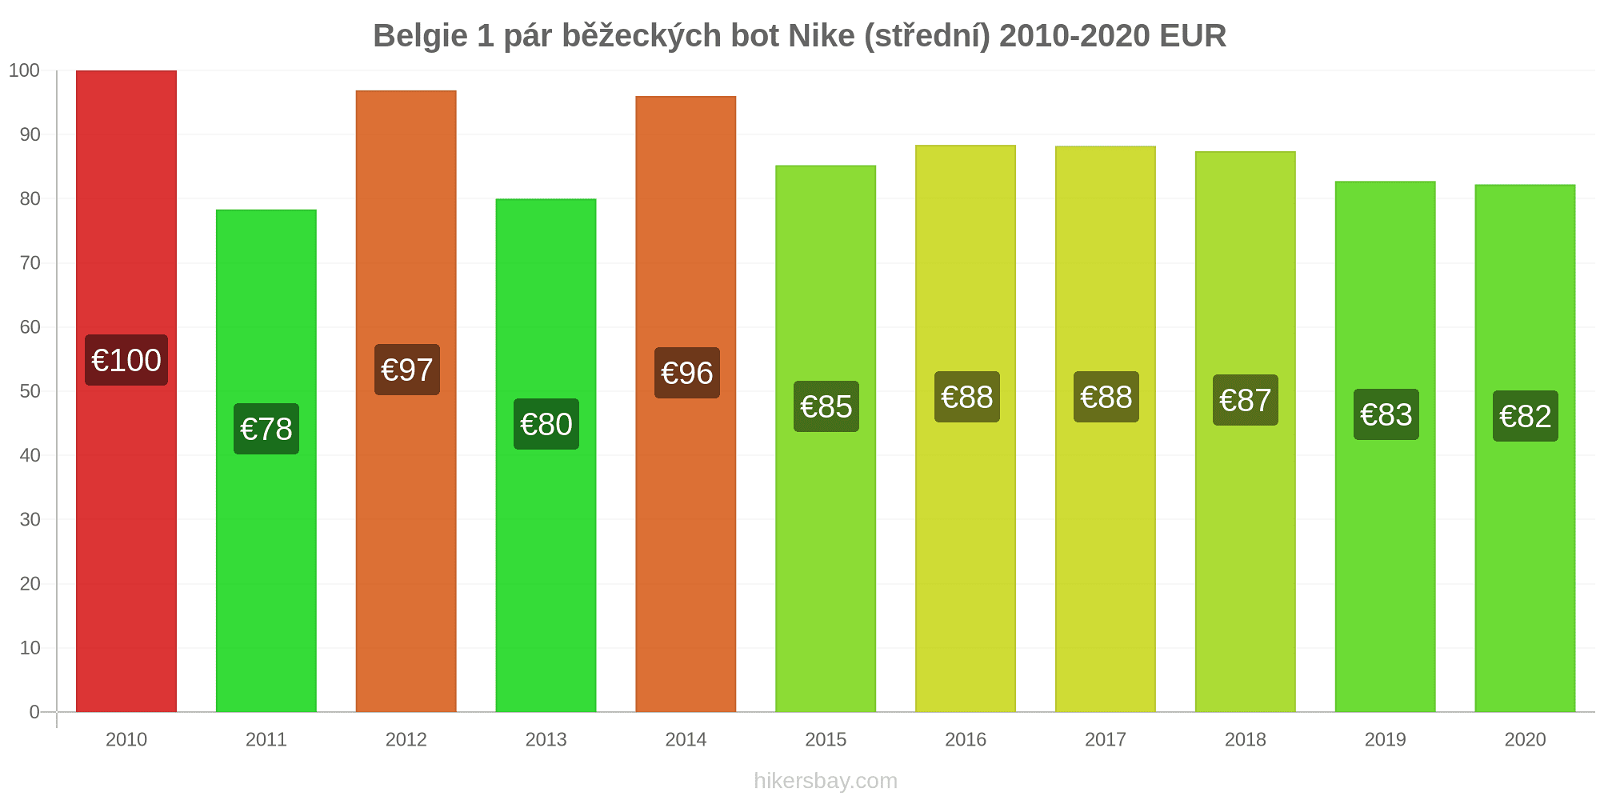 Belgie změny cen 1 pár běžeckých bot Nike (střední) hikersbay.com